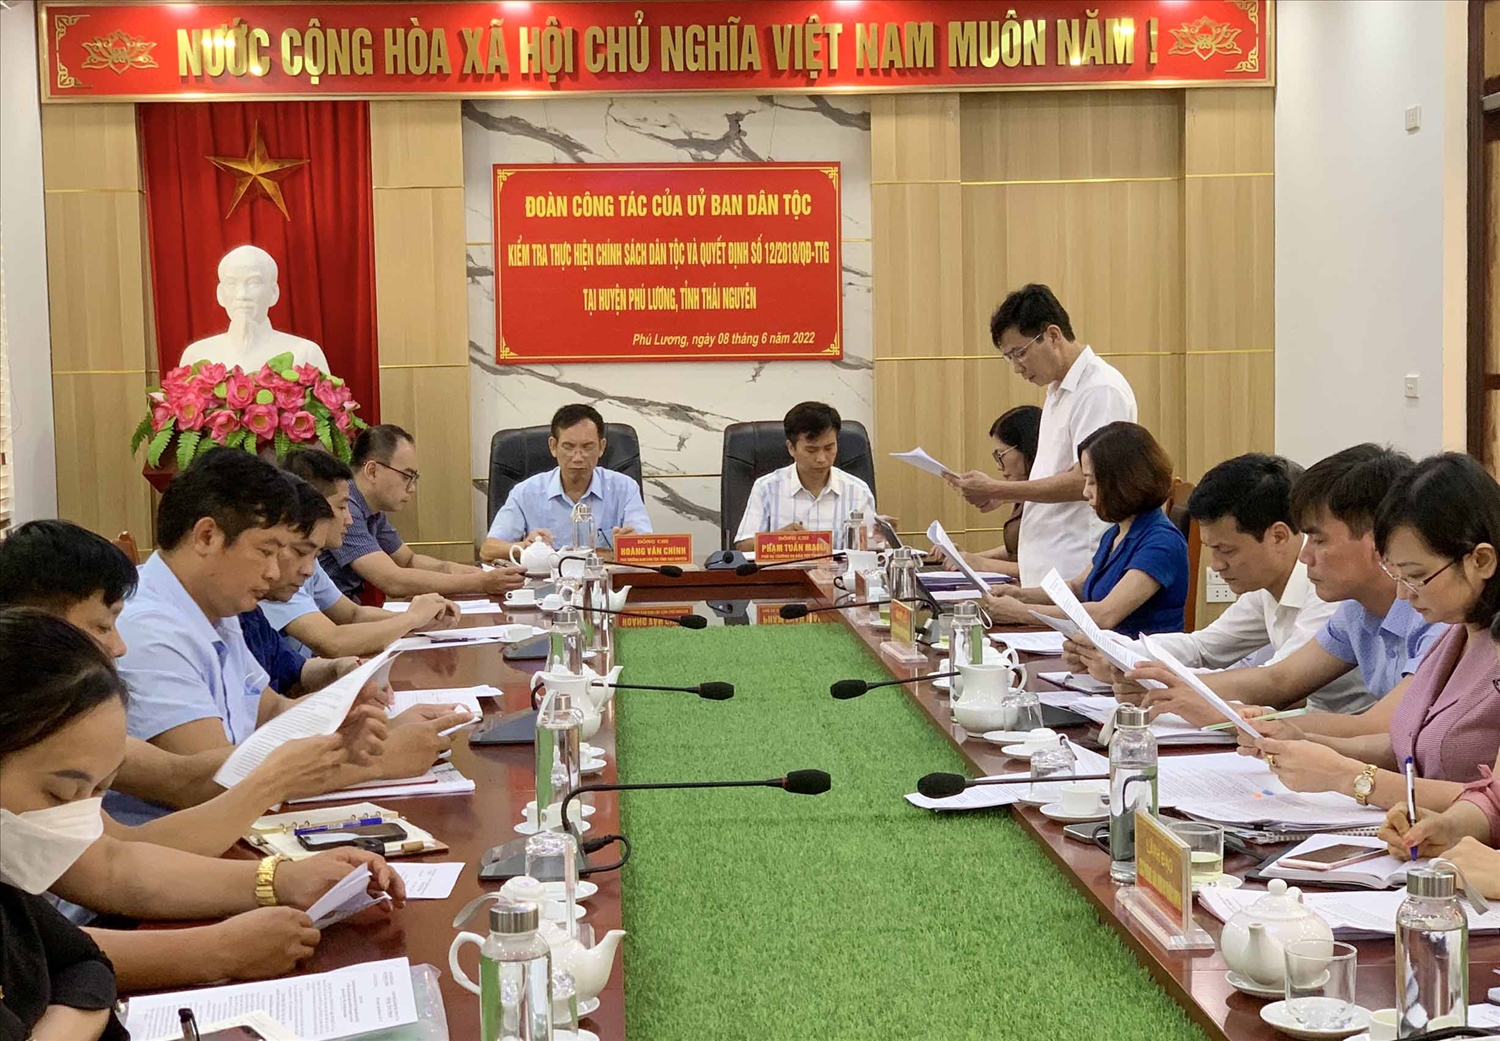 Đoàn công tác của Uỷ ban Dân tộc kiểm tra thực hiện chính sách cho Người có uy tín tại huyện Phú Lương